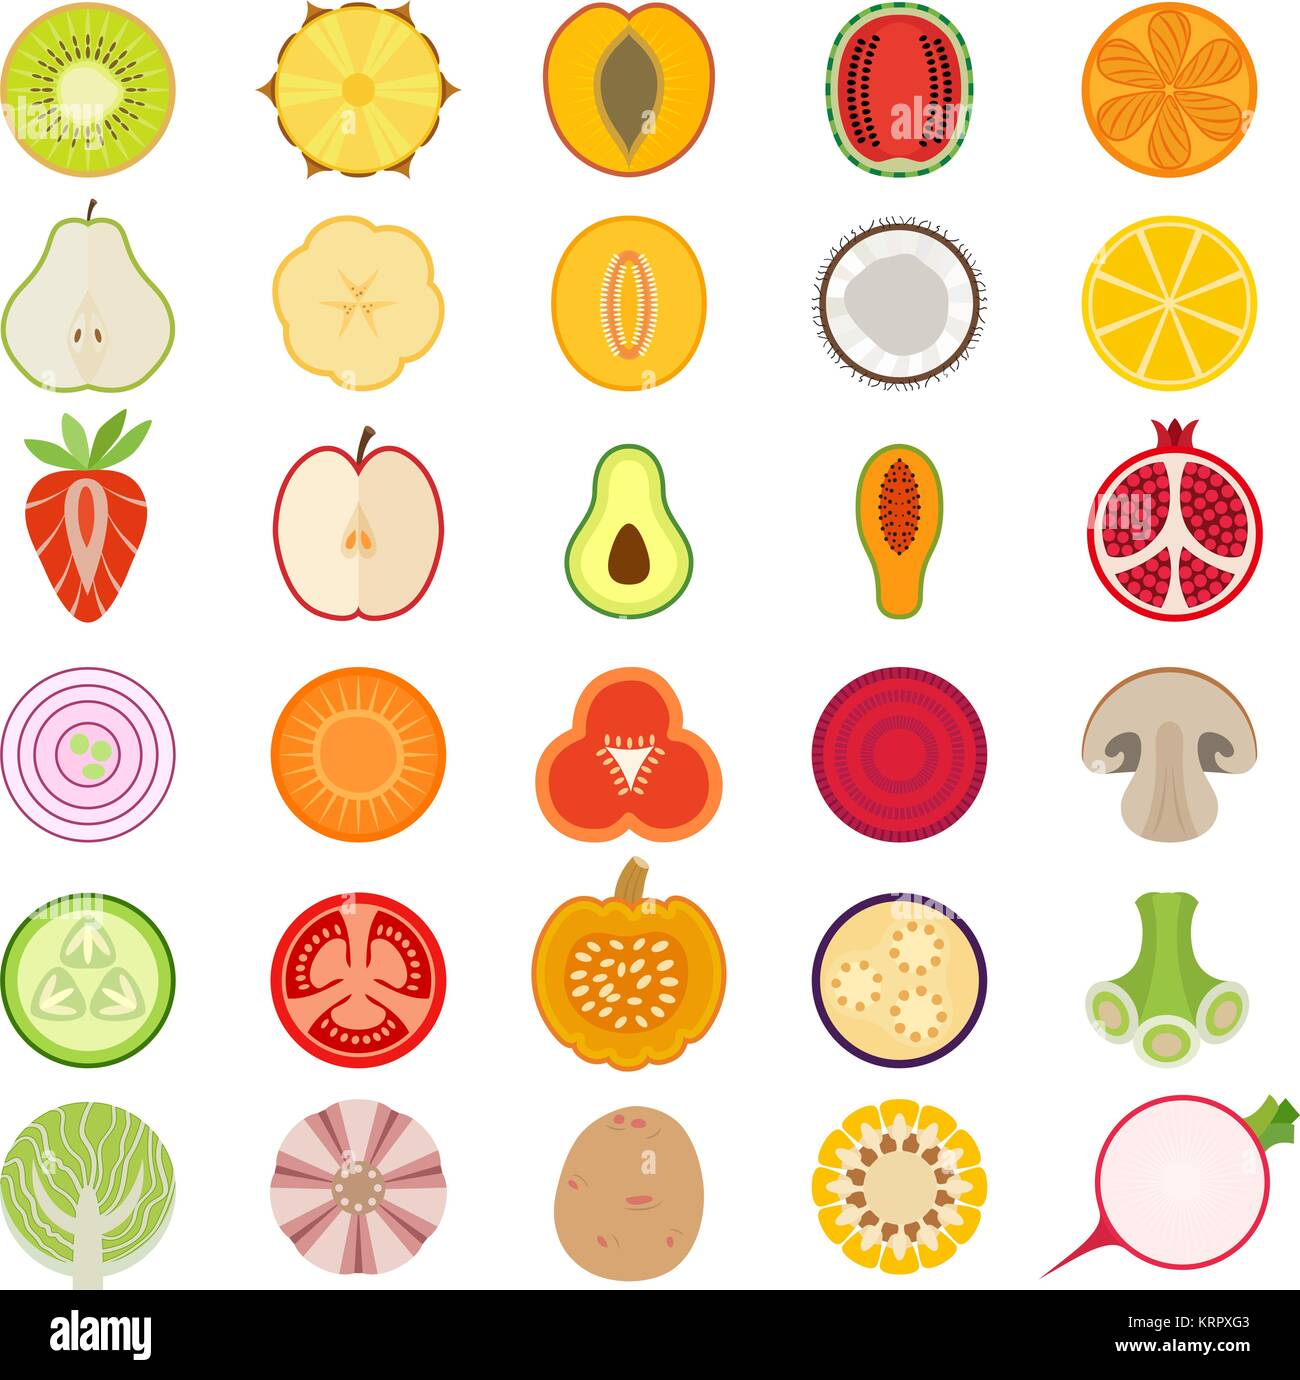 Obst und Gemüse vektor Sammlung. Früchte. Gemüse eingestellt. Stock Vektor